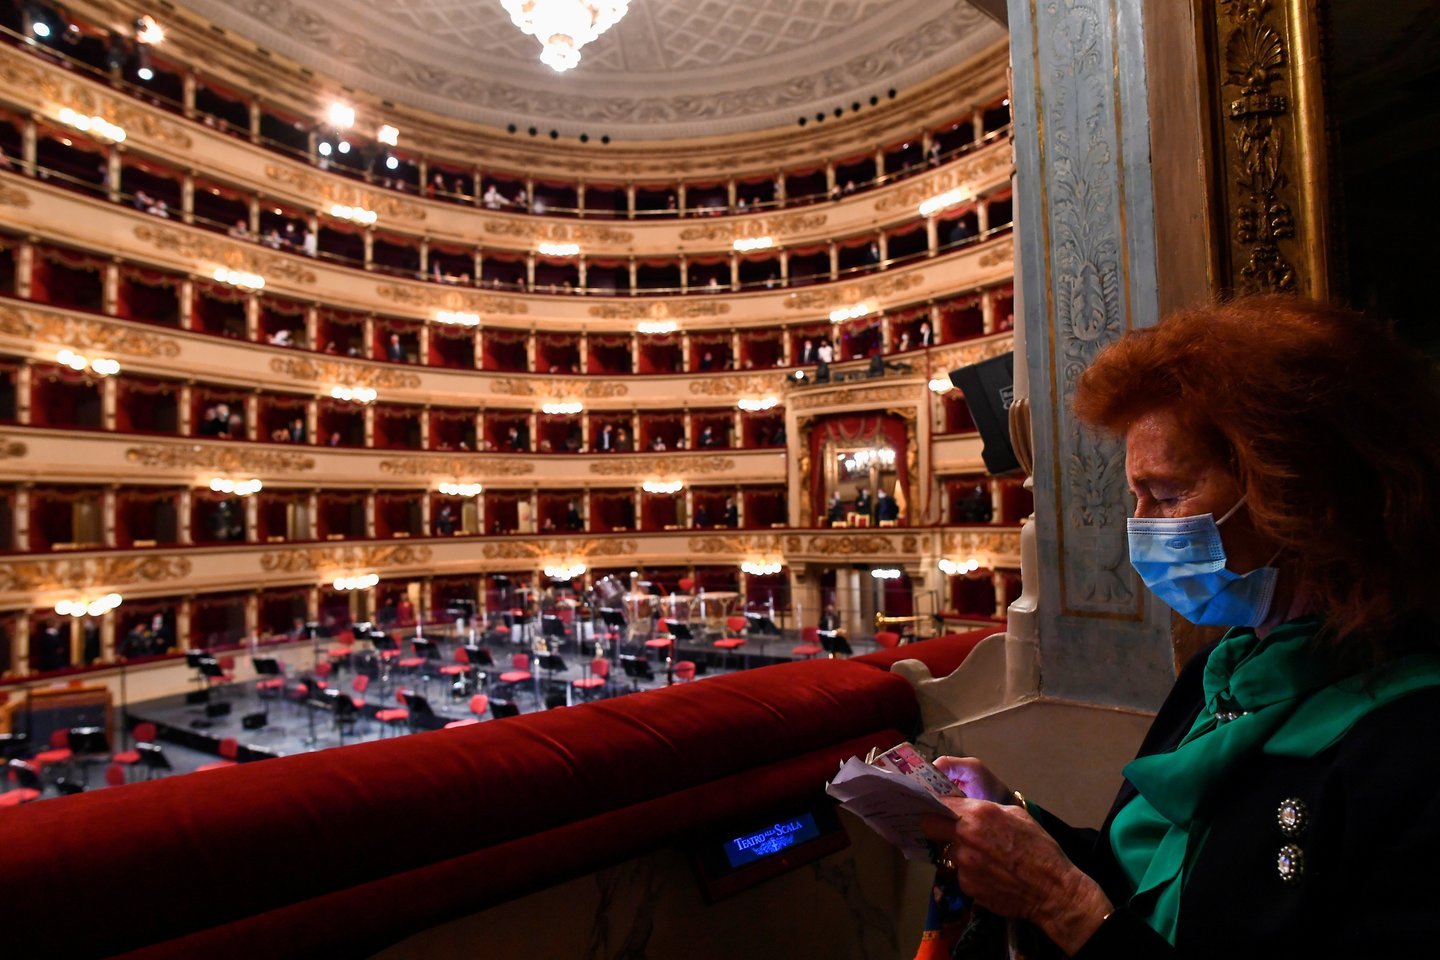  Operos rūmai atsidarė dieną prieš minint 1946 metų istorinio pirmojo koncerto per karą sugriautoje ir per trejus metus atstatytoje „La Scala“ salėje 75-ąsias metines. <br> Reuters/Scanpix nuotr.